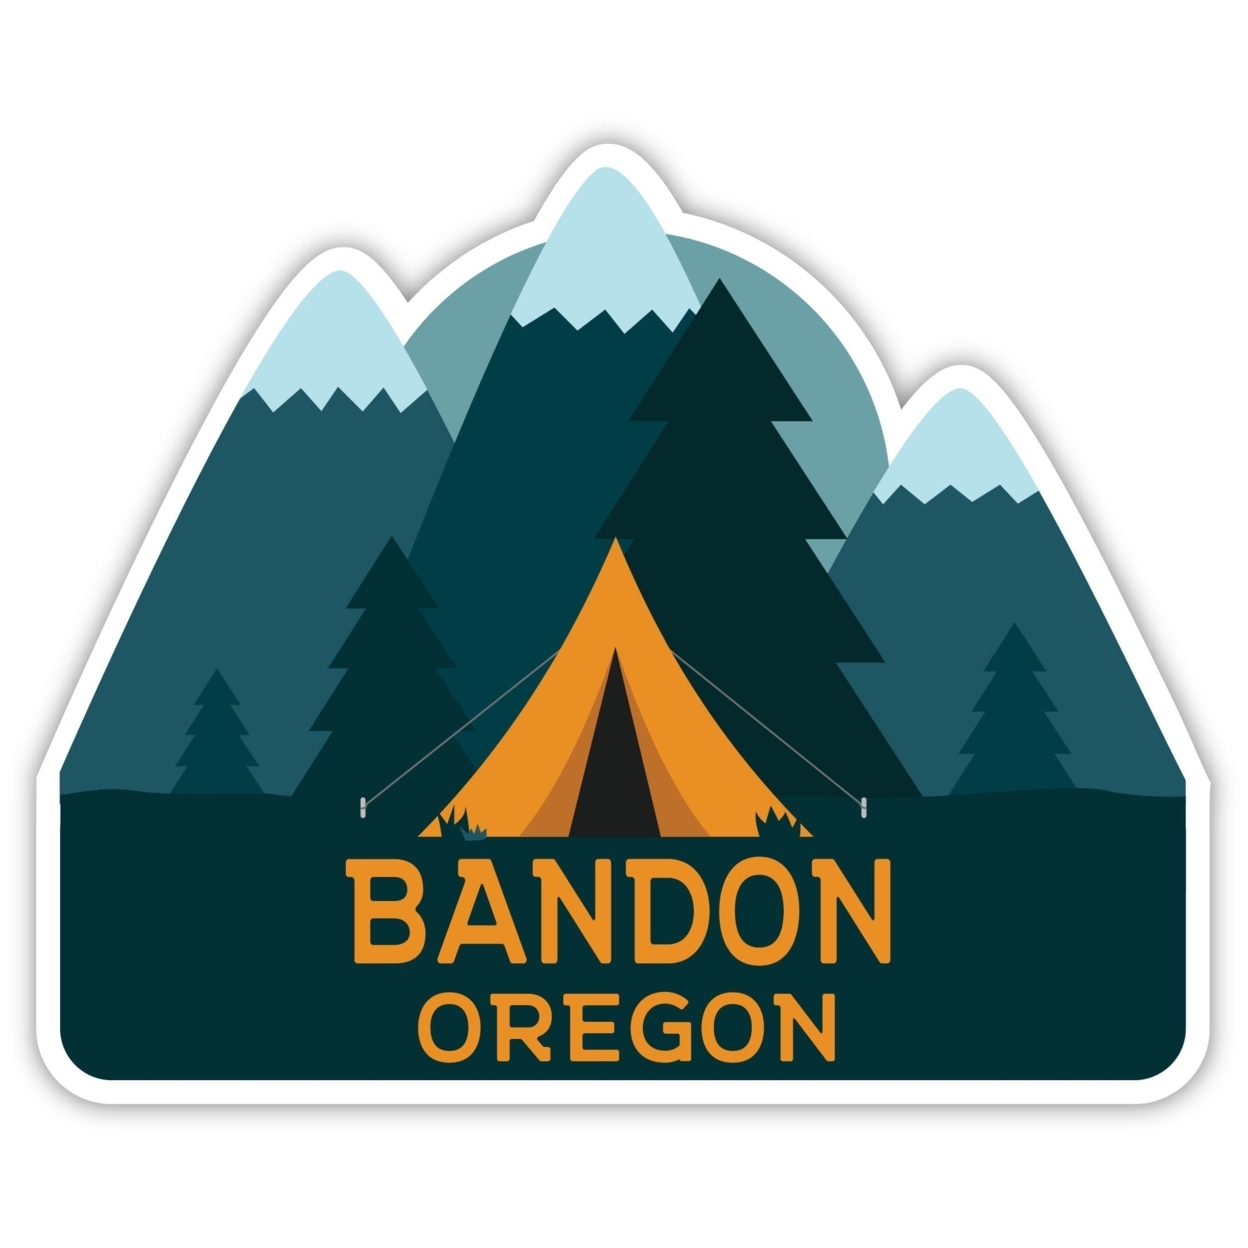 Bandon Oregon Souvenir Decorative Stickers (Choose Theme And Size) - Single Unit, 6-Inch, Tent